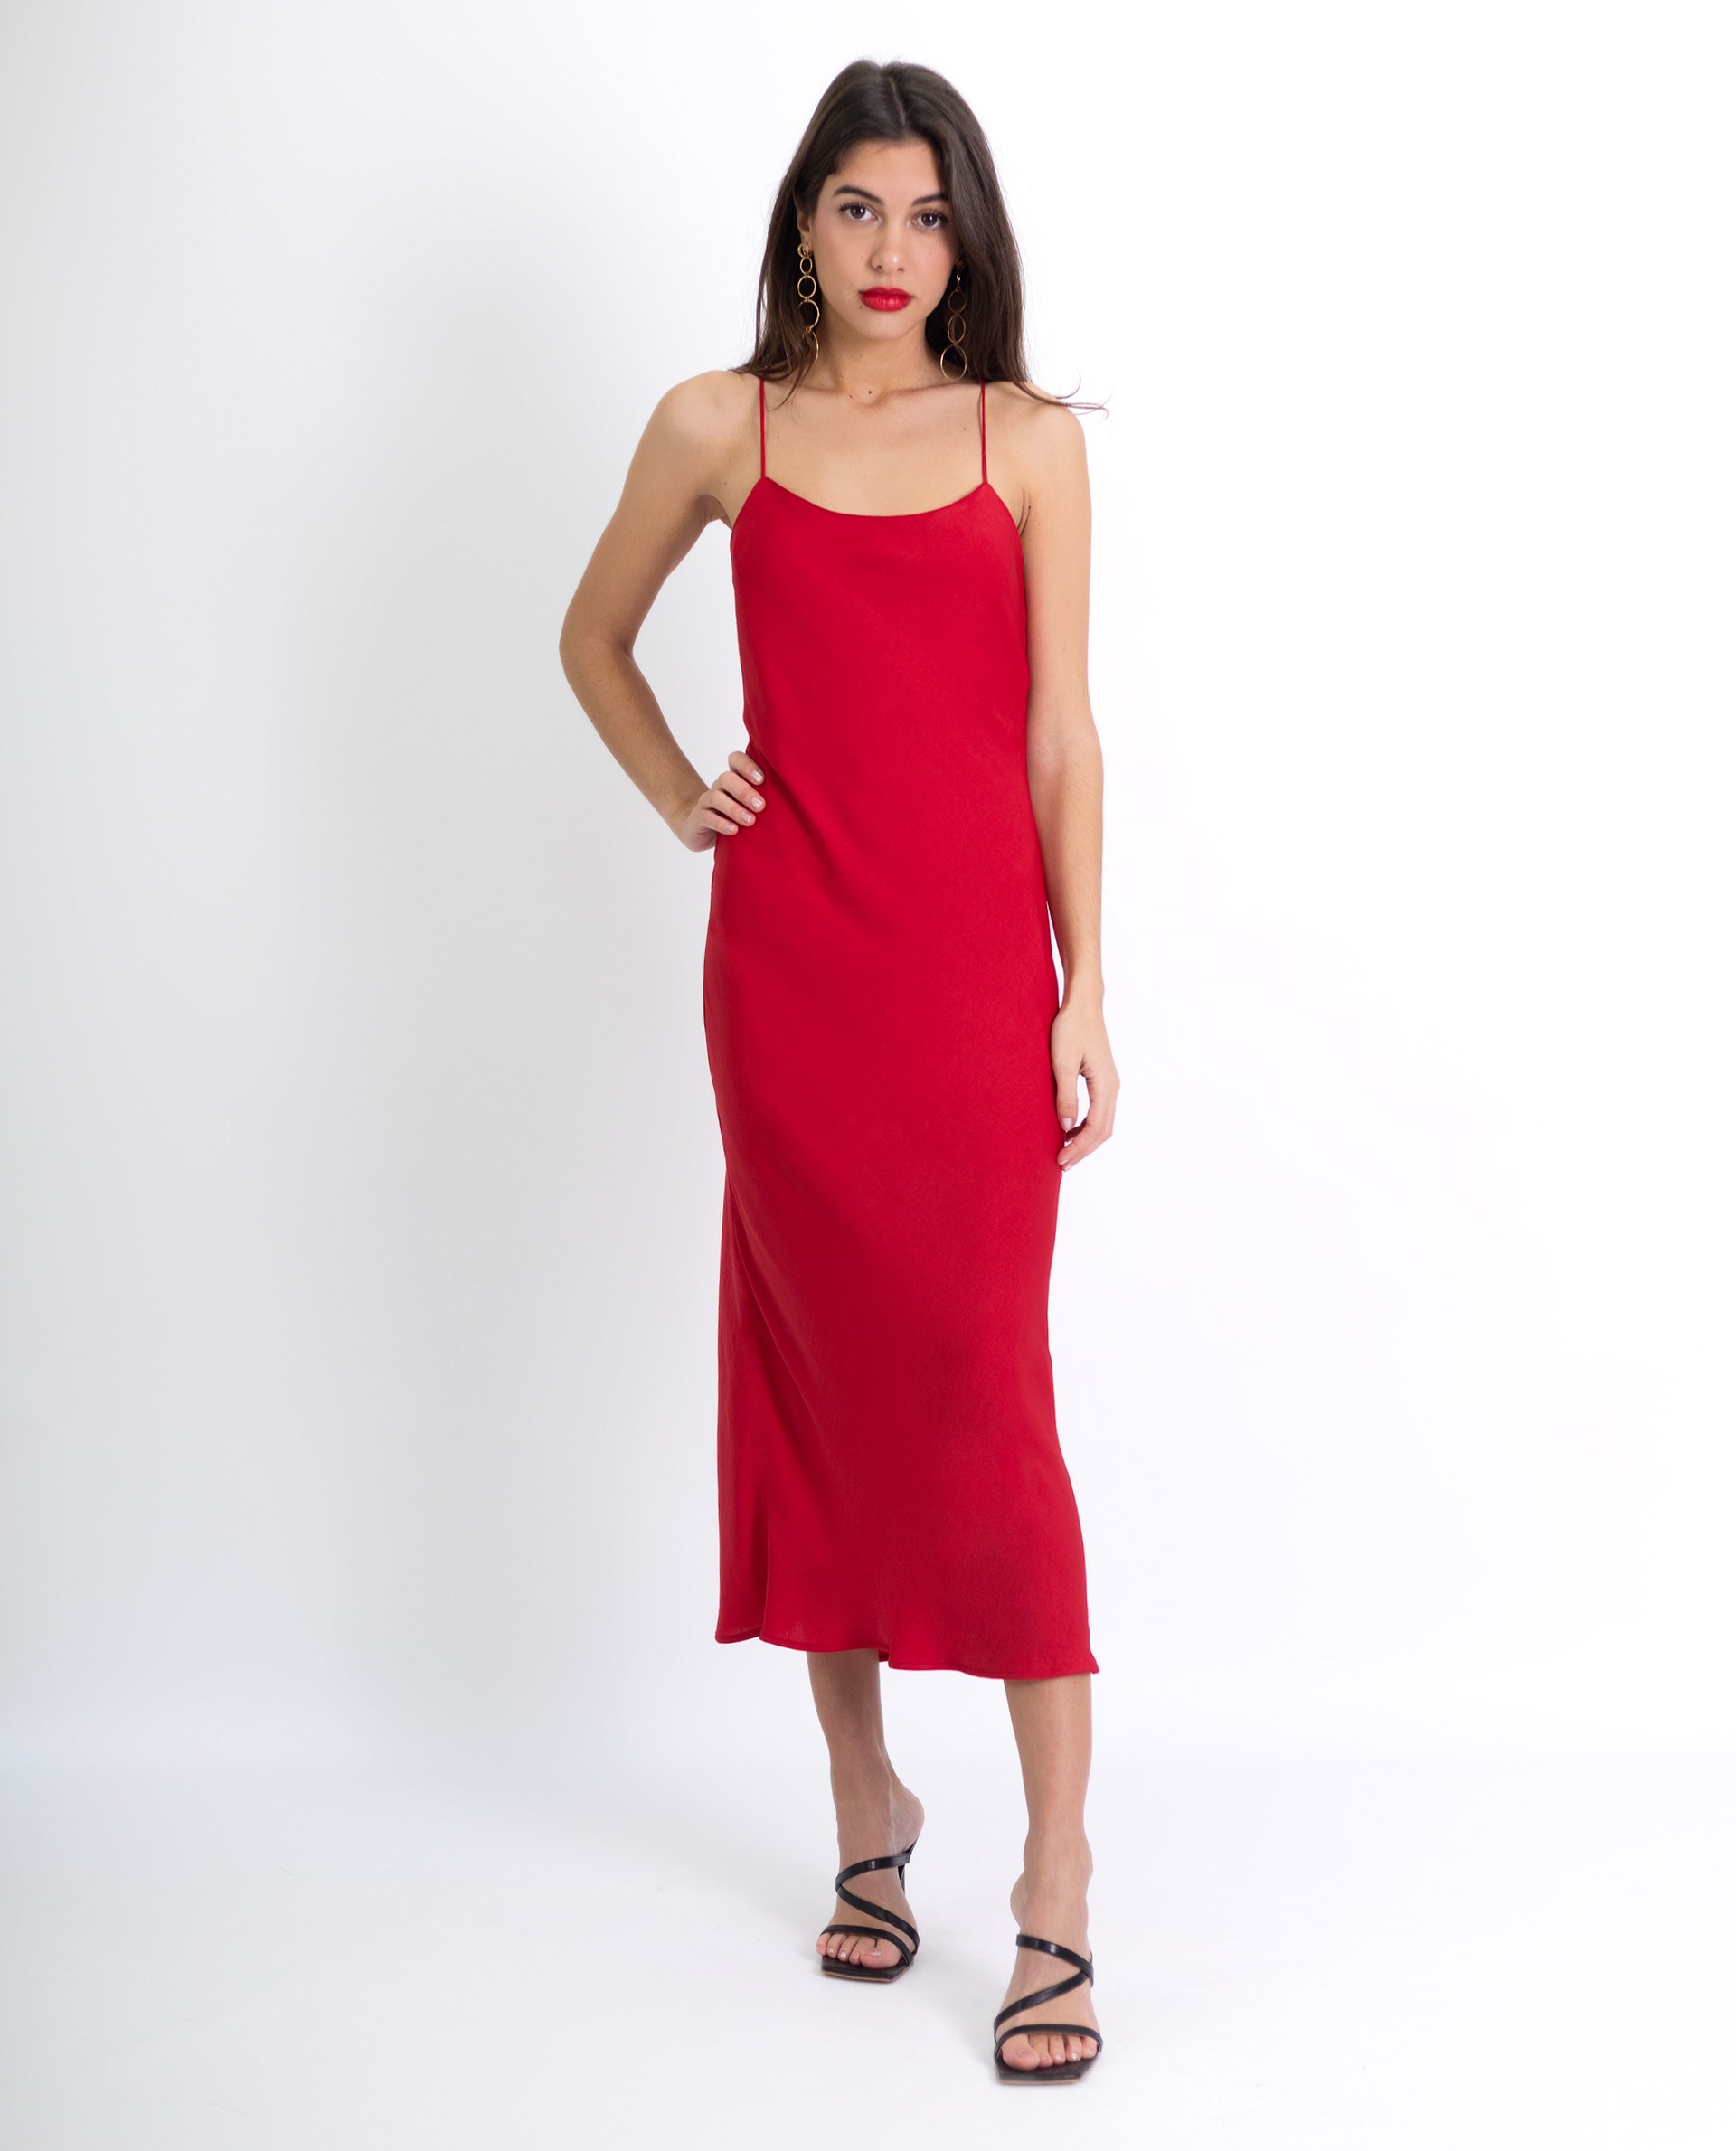 VESTIDO CHARMING | Vestido Rojo Slip Dress Elegante con Espalda Descubierta